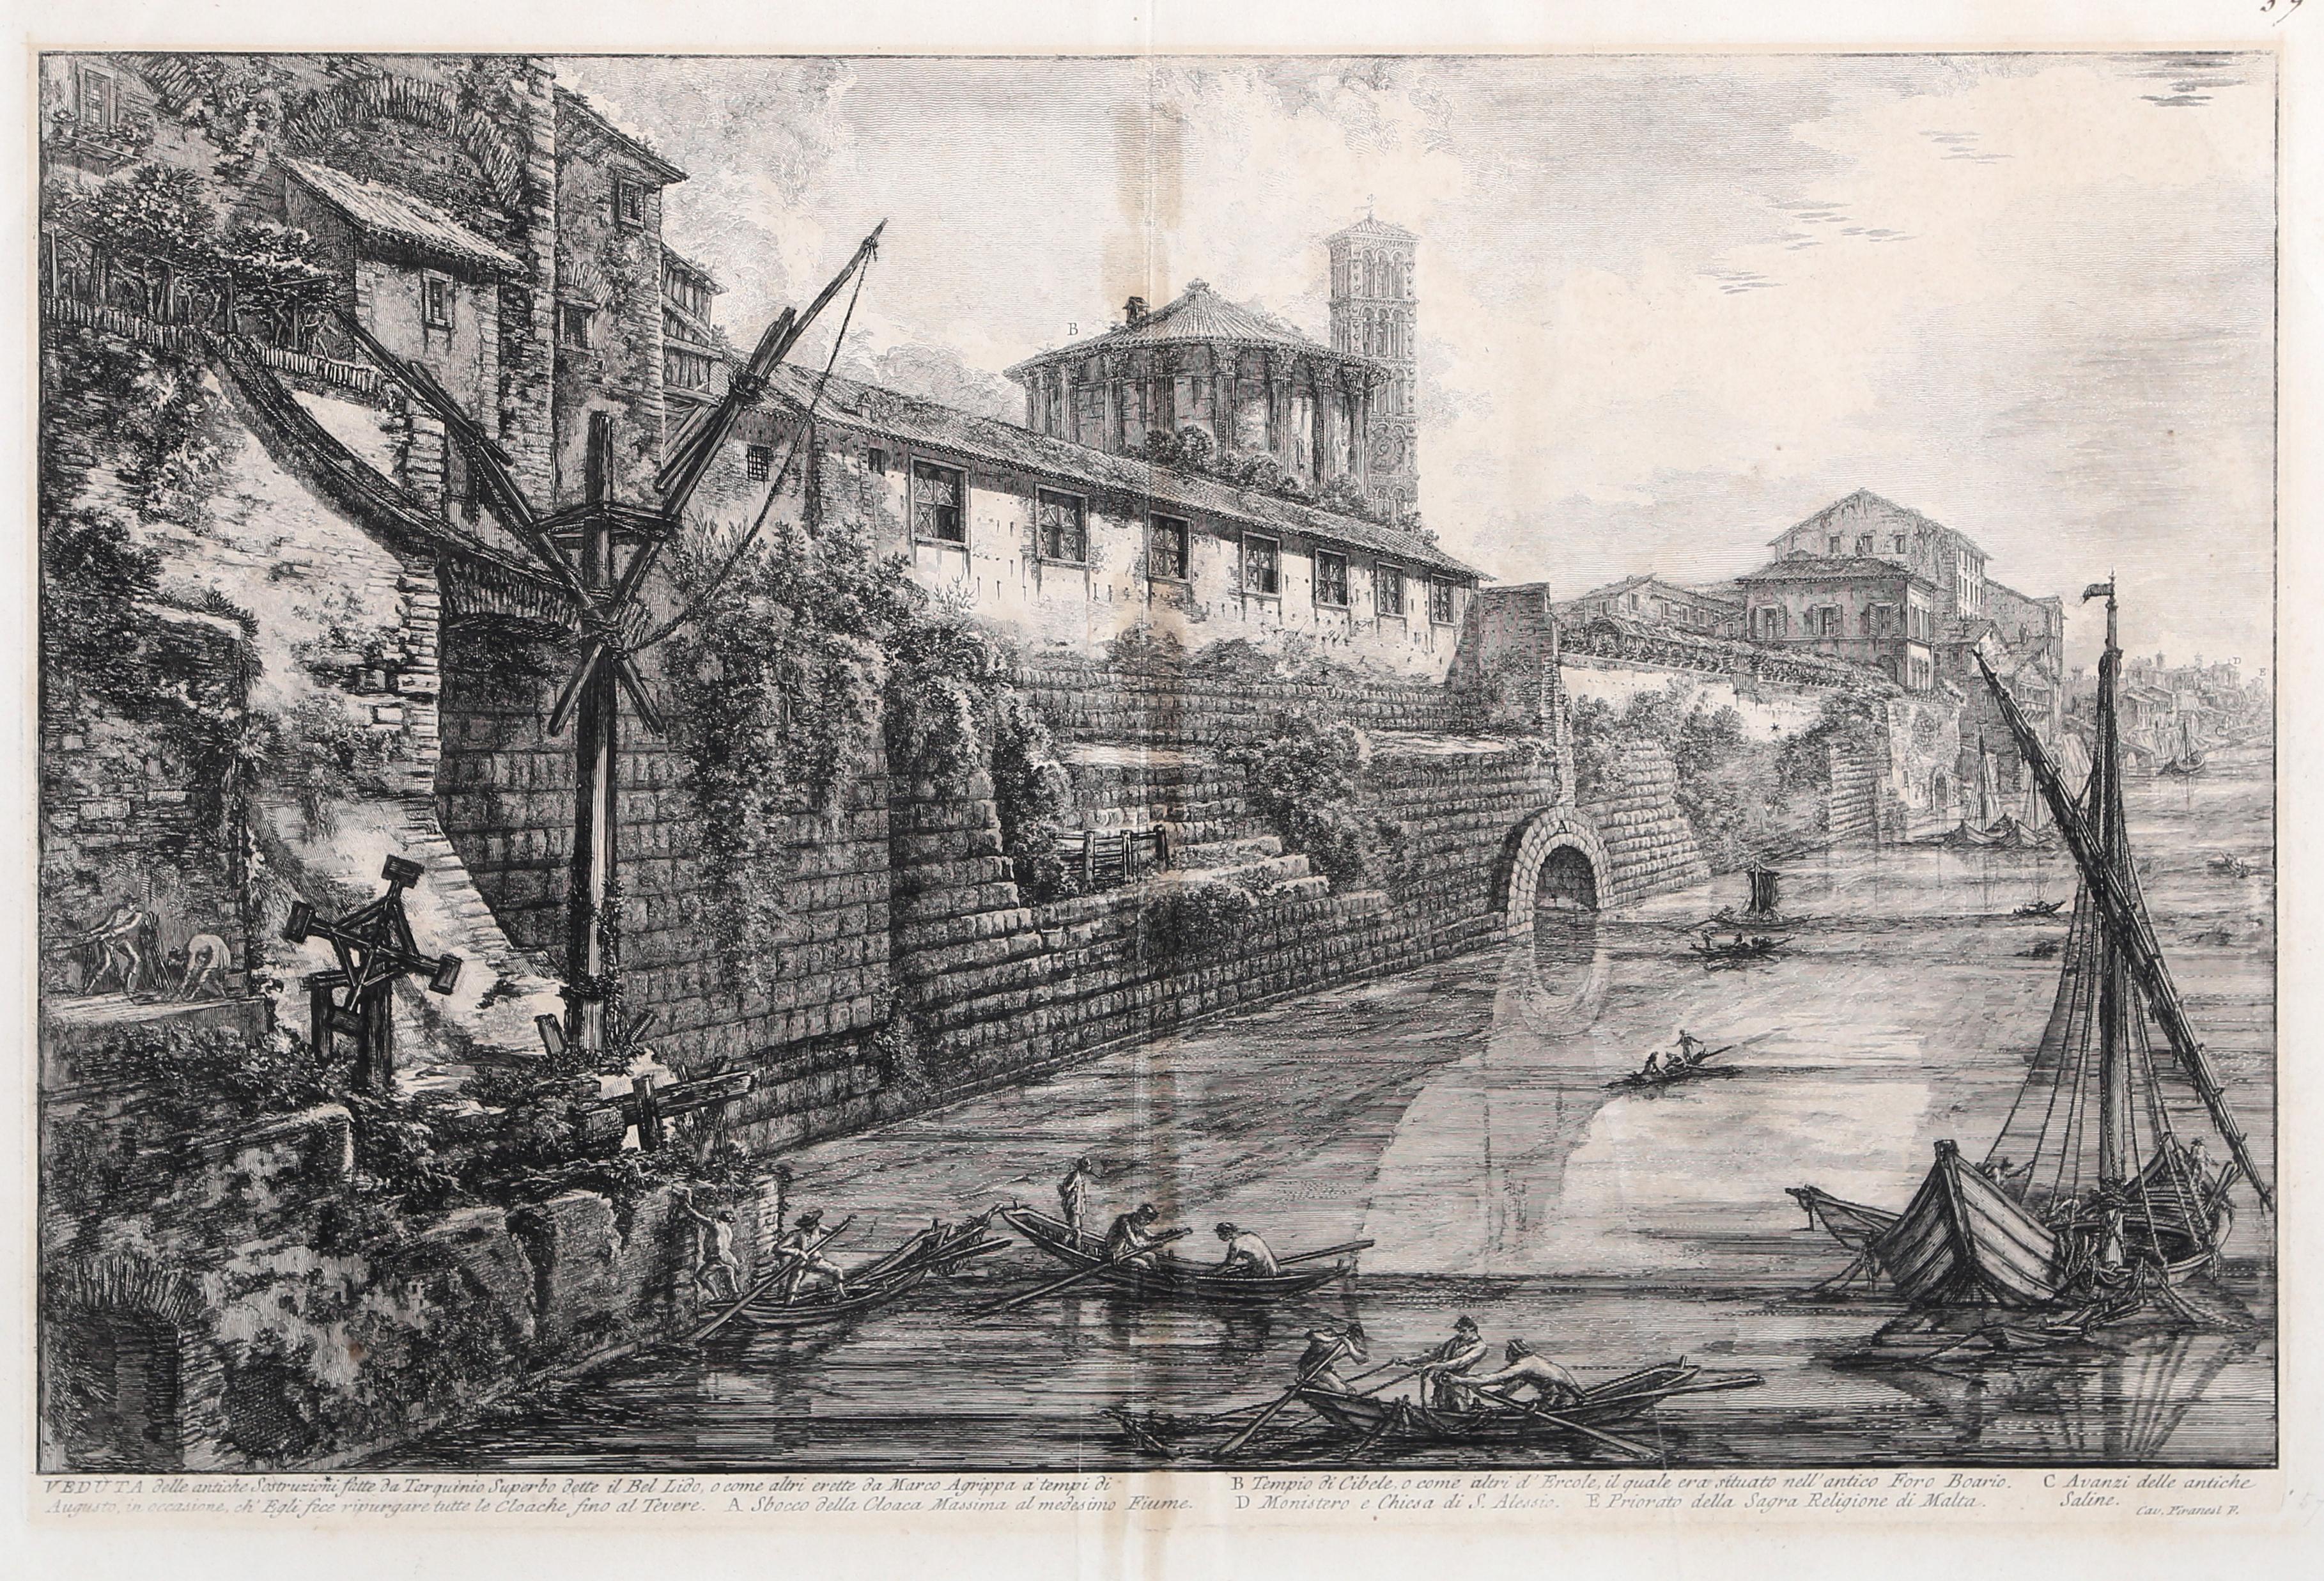 Veduta delle Antiche Sostruzioni, gravure de paysage urbain vintage de Giovanni Piranesi